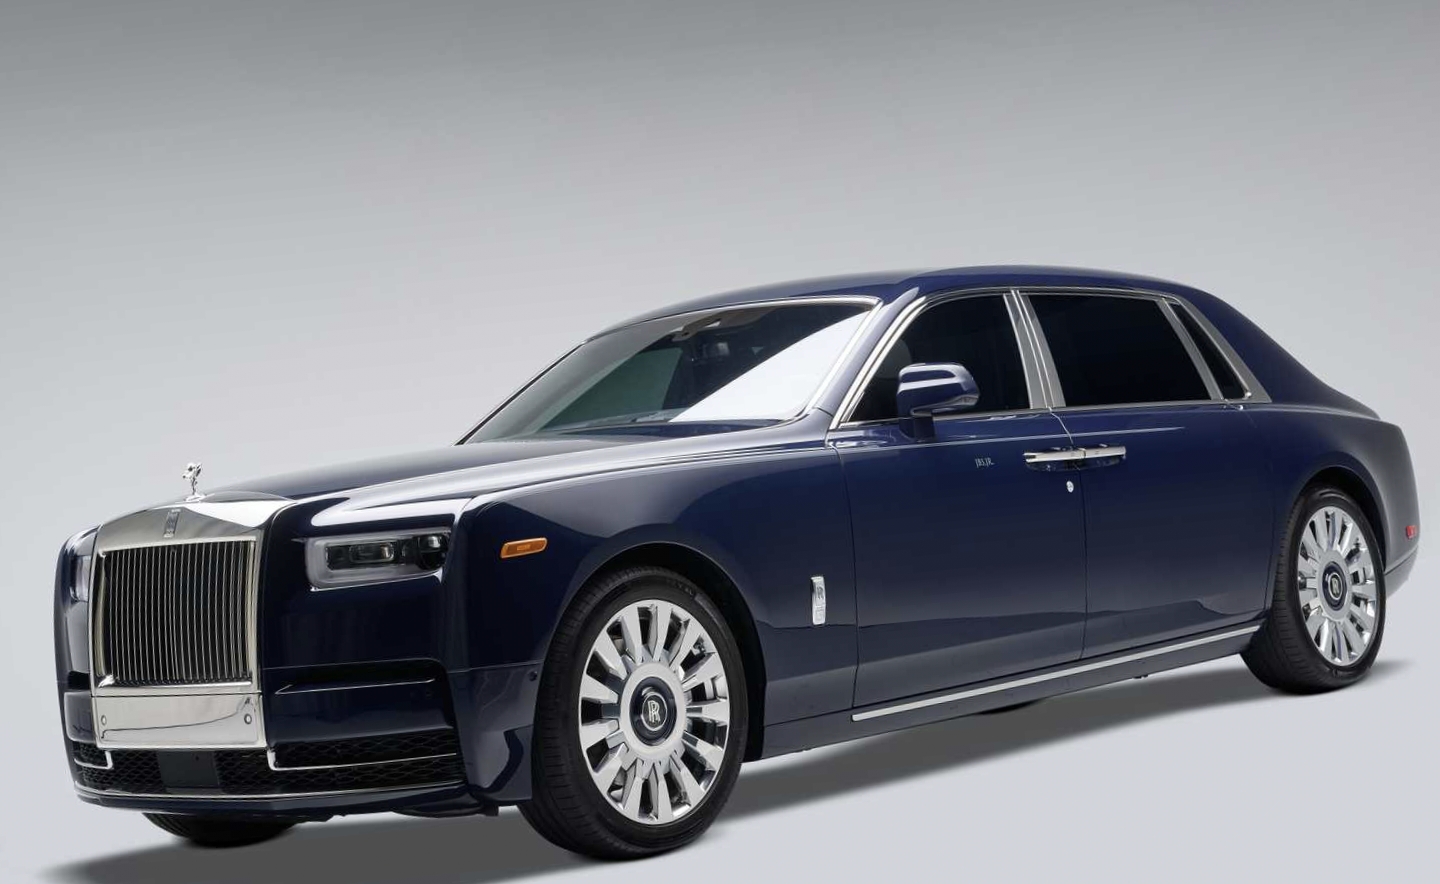 Intip Kecanggihan dan Keistimewaan Rolls-Royce-Phantom Prokdusi Otomotif Inggris Laris di Dunia dengan Inovasi